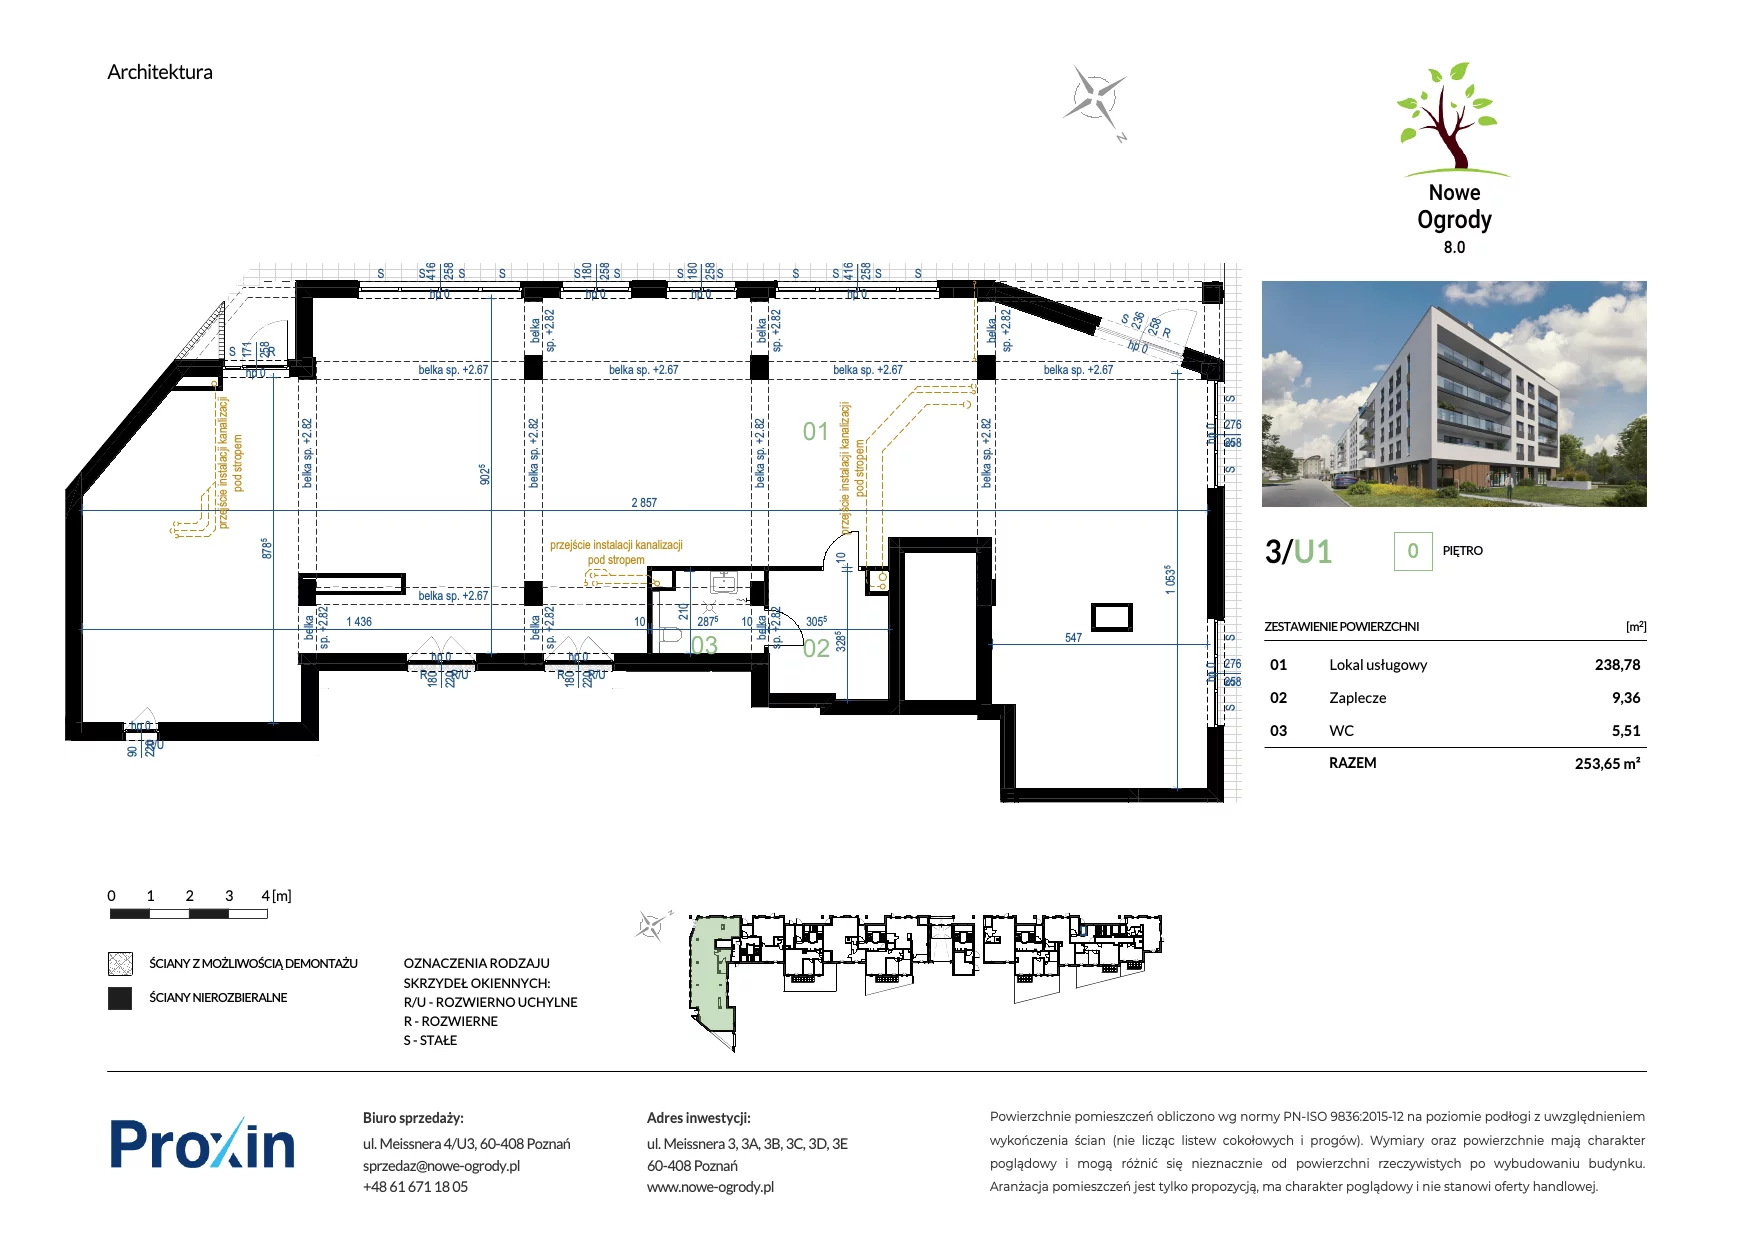 Lokal użytkowy 253,65 m², oferta nr U1, Nowe Ogrody 8.0 - lokale użytkowe, Poznań, Jeżyce, ul. Janusza Meissnera 3